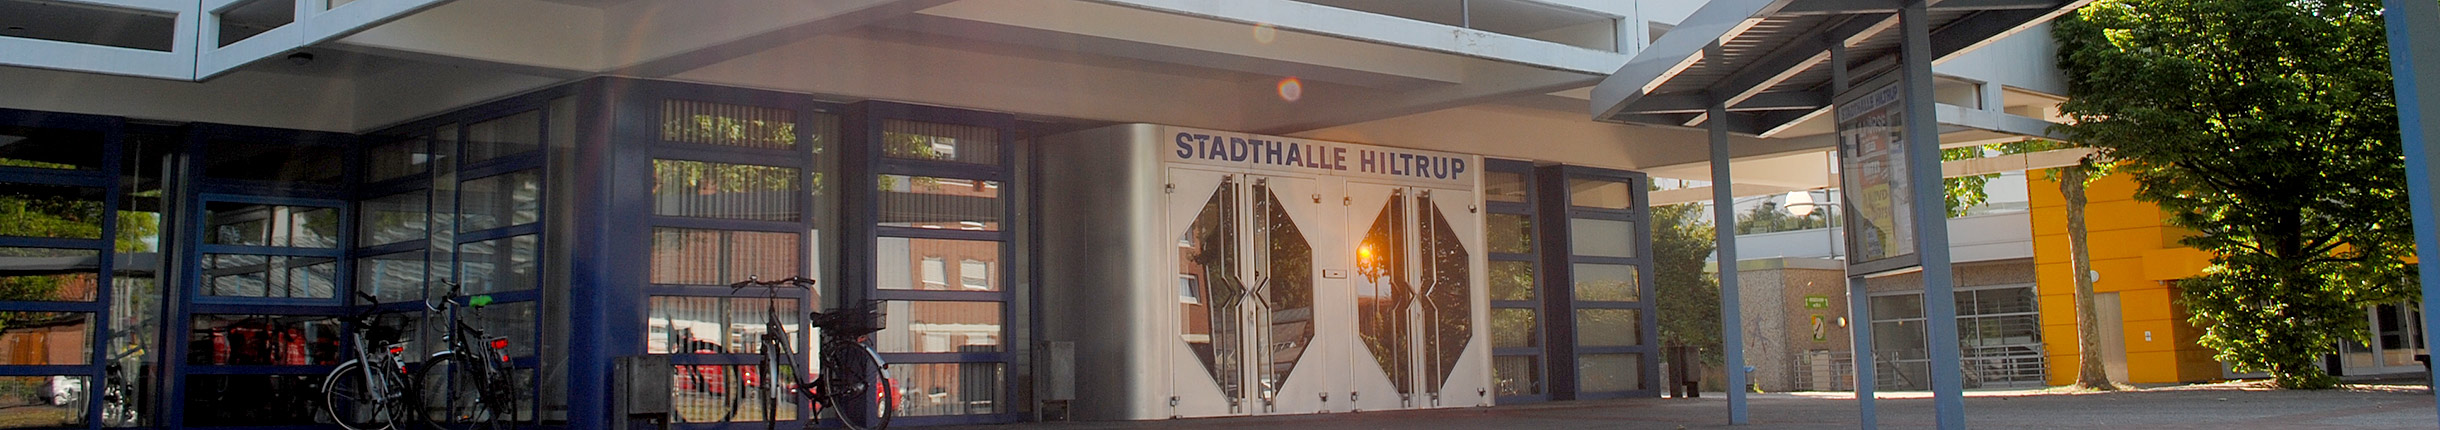 Stadthalle Hiltrup - Außenansicht